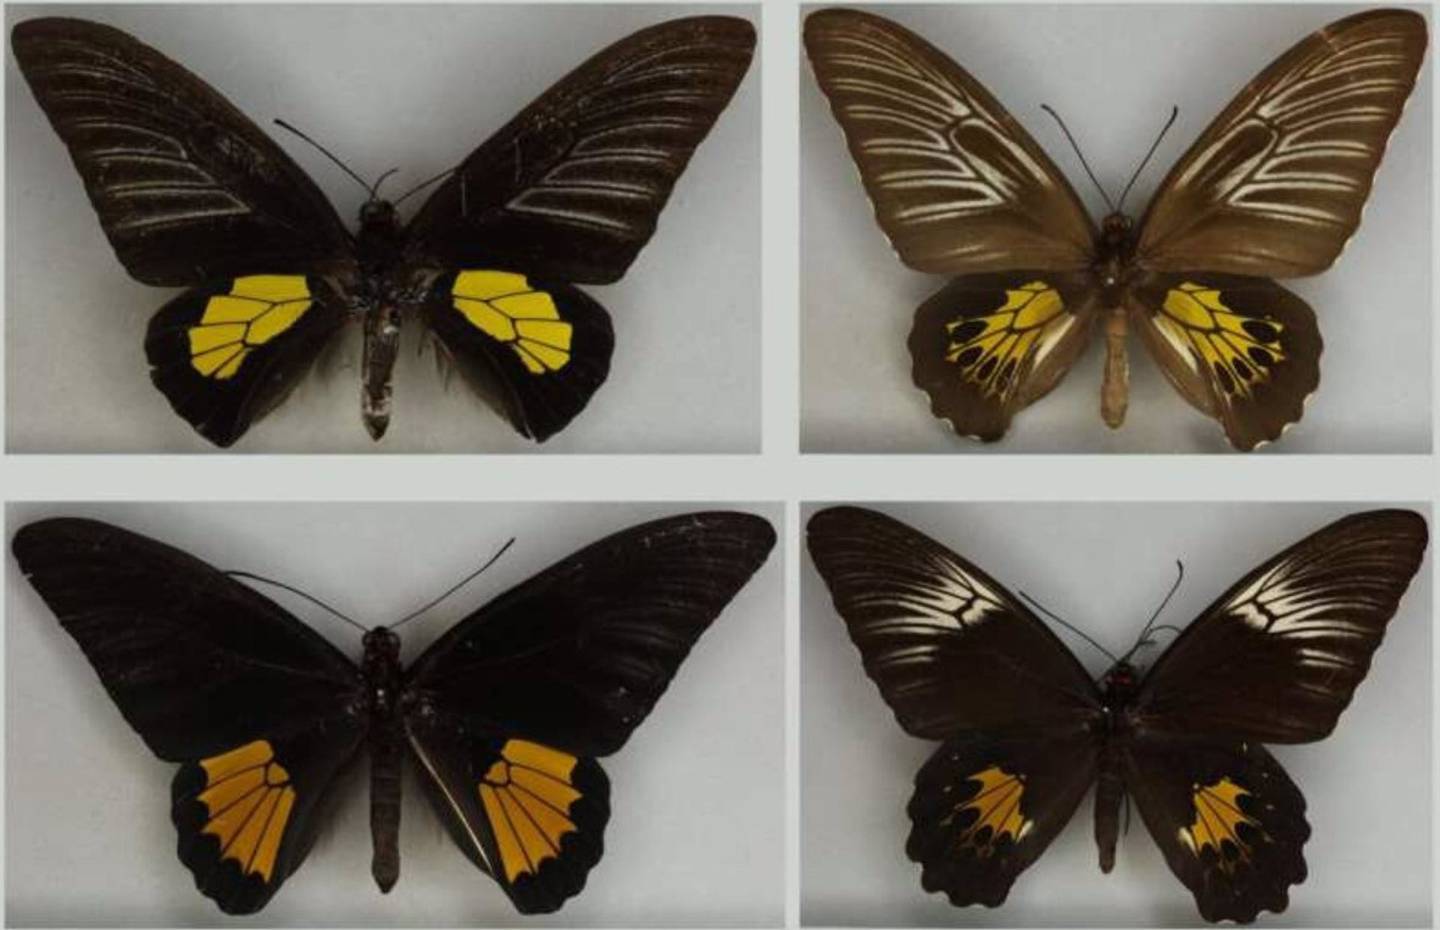 Estudio con IA analiza la evolución de mariposas hembras, aclarando el debate entre Darwin y Wallace sobre variación entre sexos.